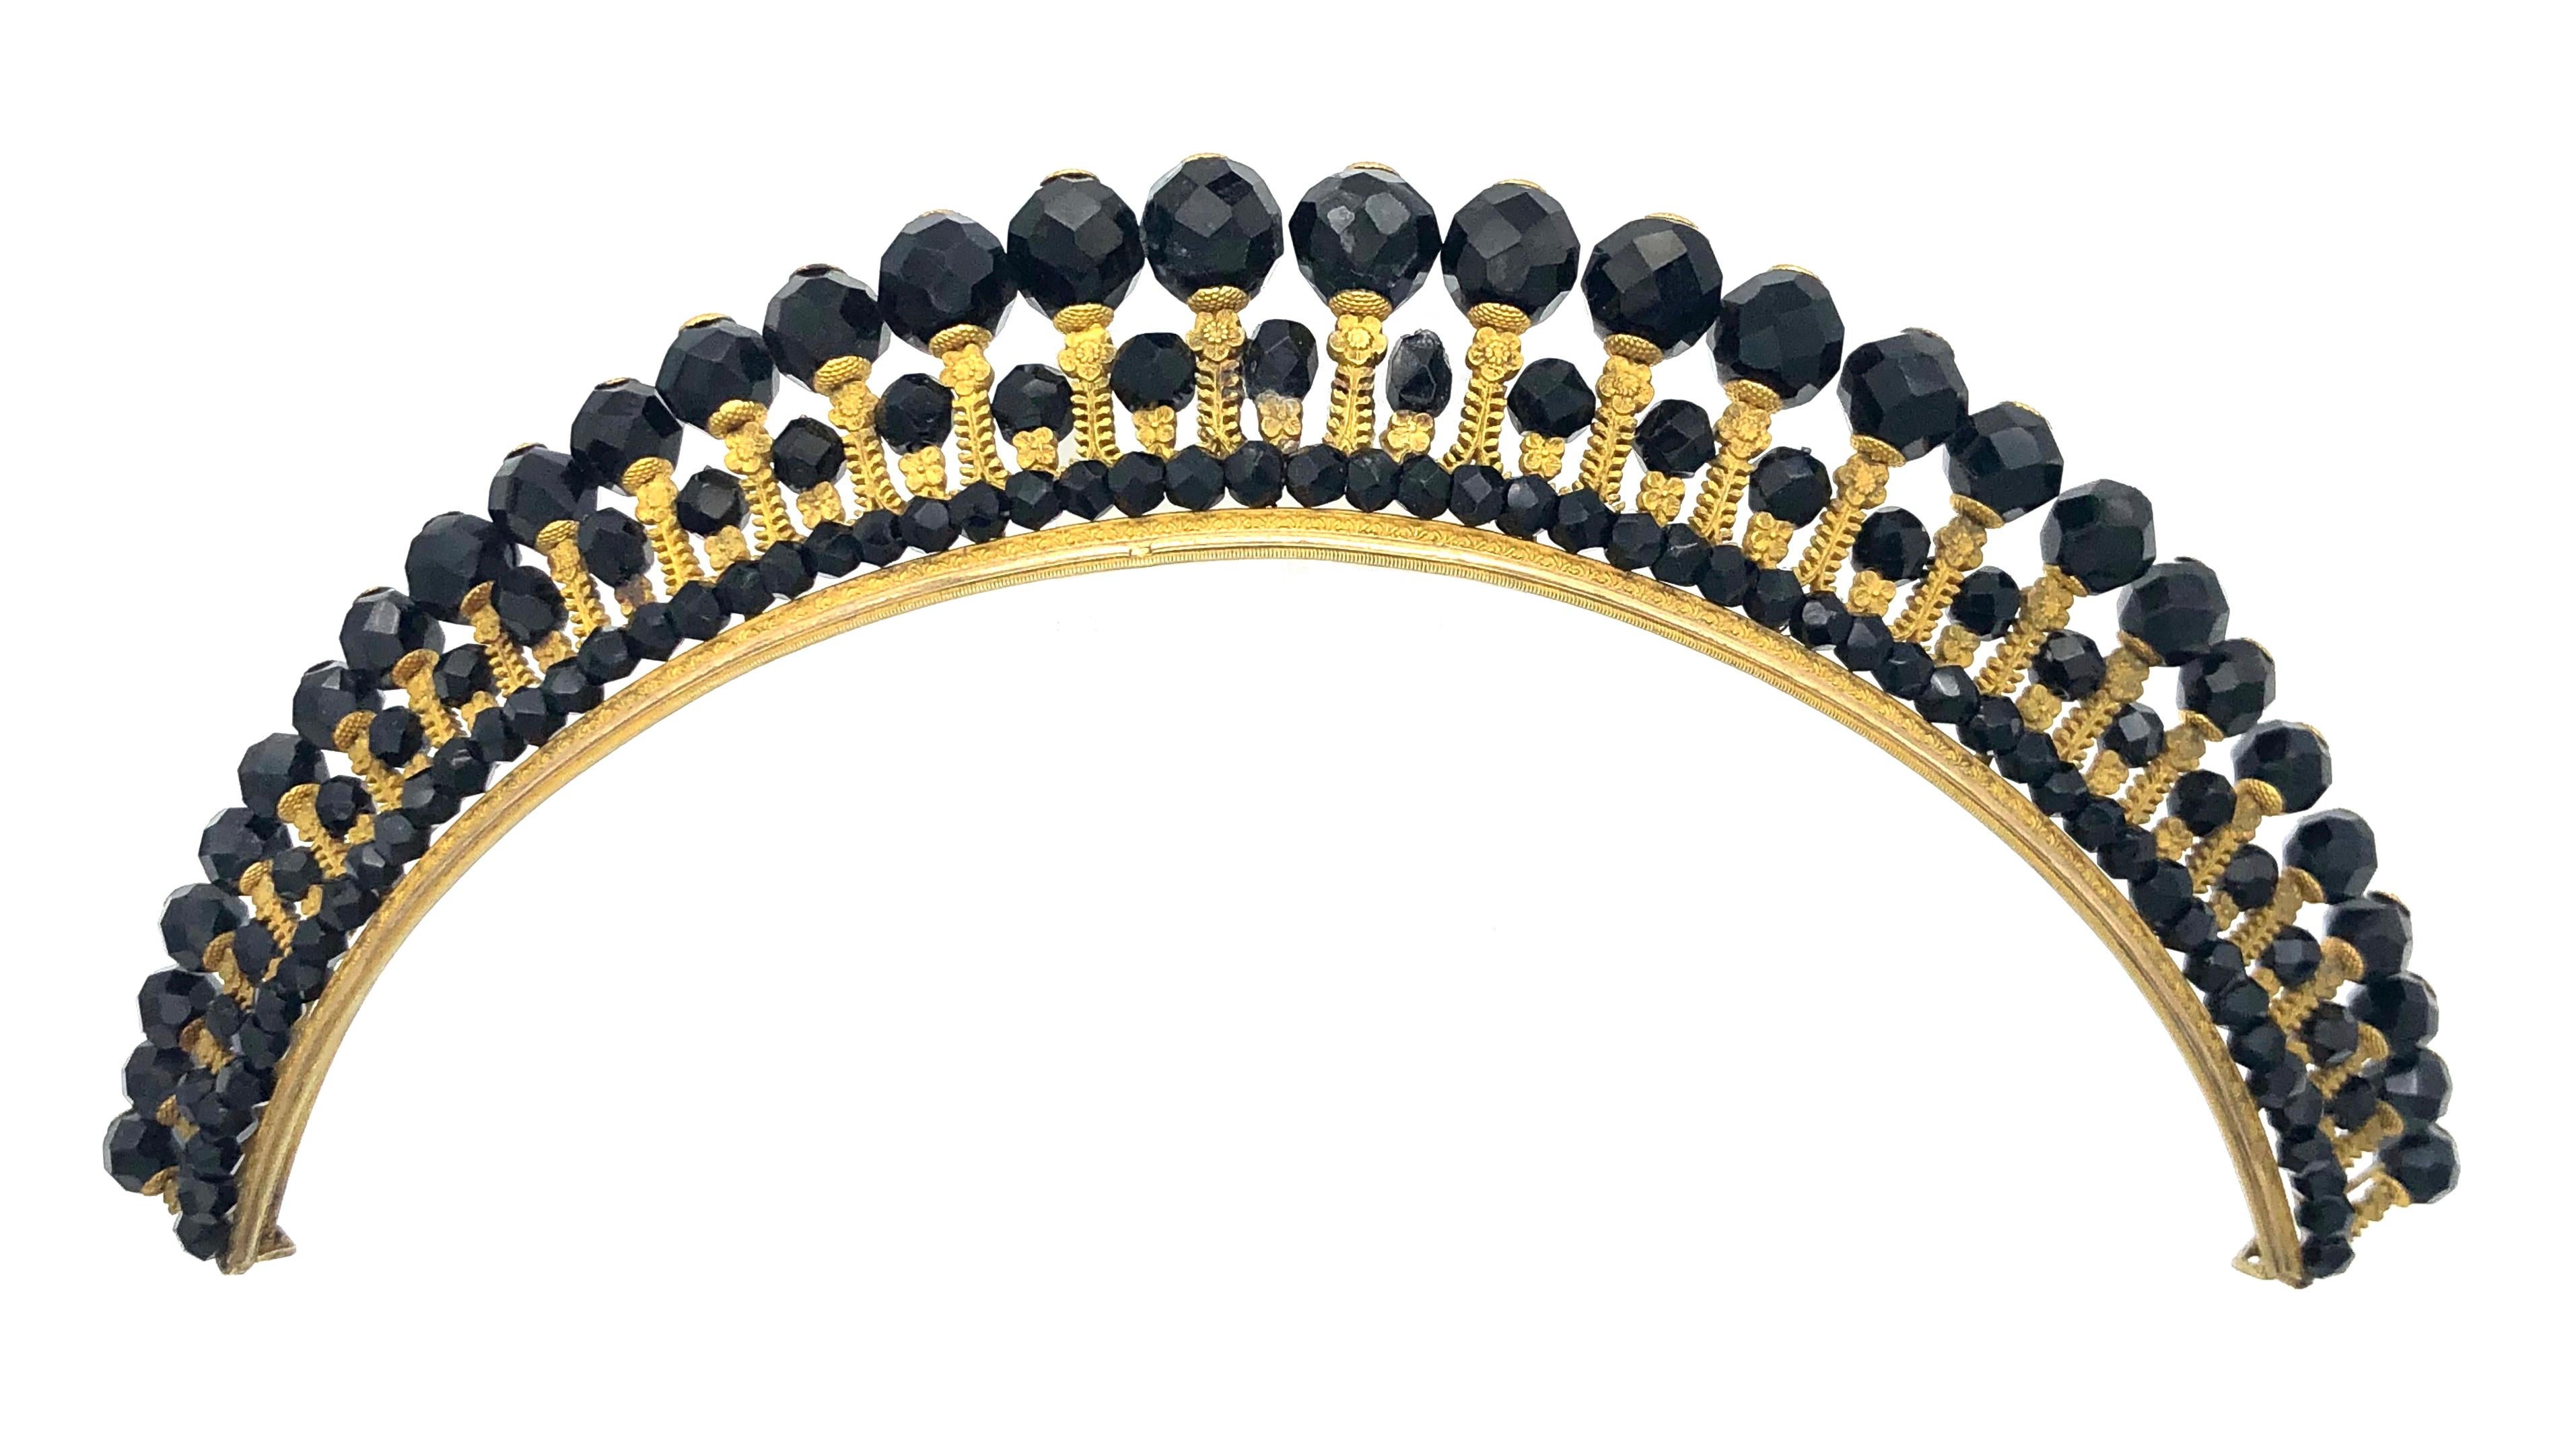 Les diadèmes de la période Empire sont en effet très rares. Ce bel exemple est fait de perles d'onyx ciselées et de métal doré au feu finement travaillé.